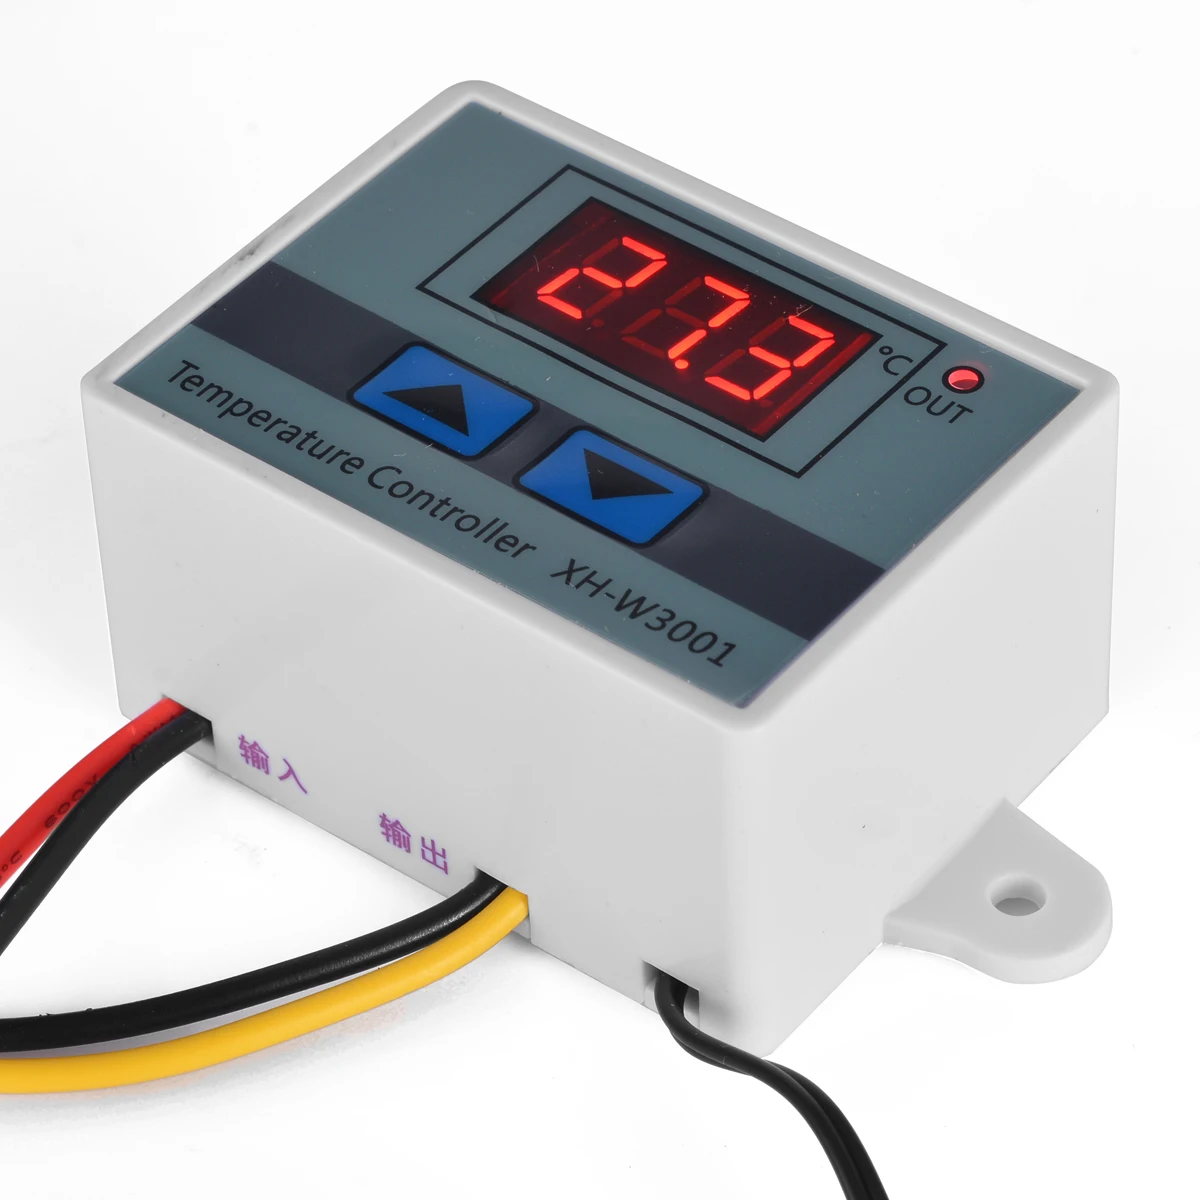 

Цифровой светодиодный регулятор температуры для инкубатора, 220 В, 10 А, переключатель охлаждения, термостат, датчик NTC, температурный прибор